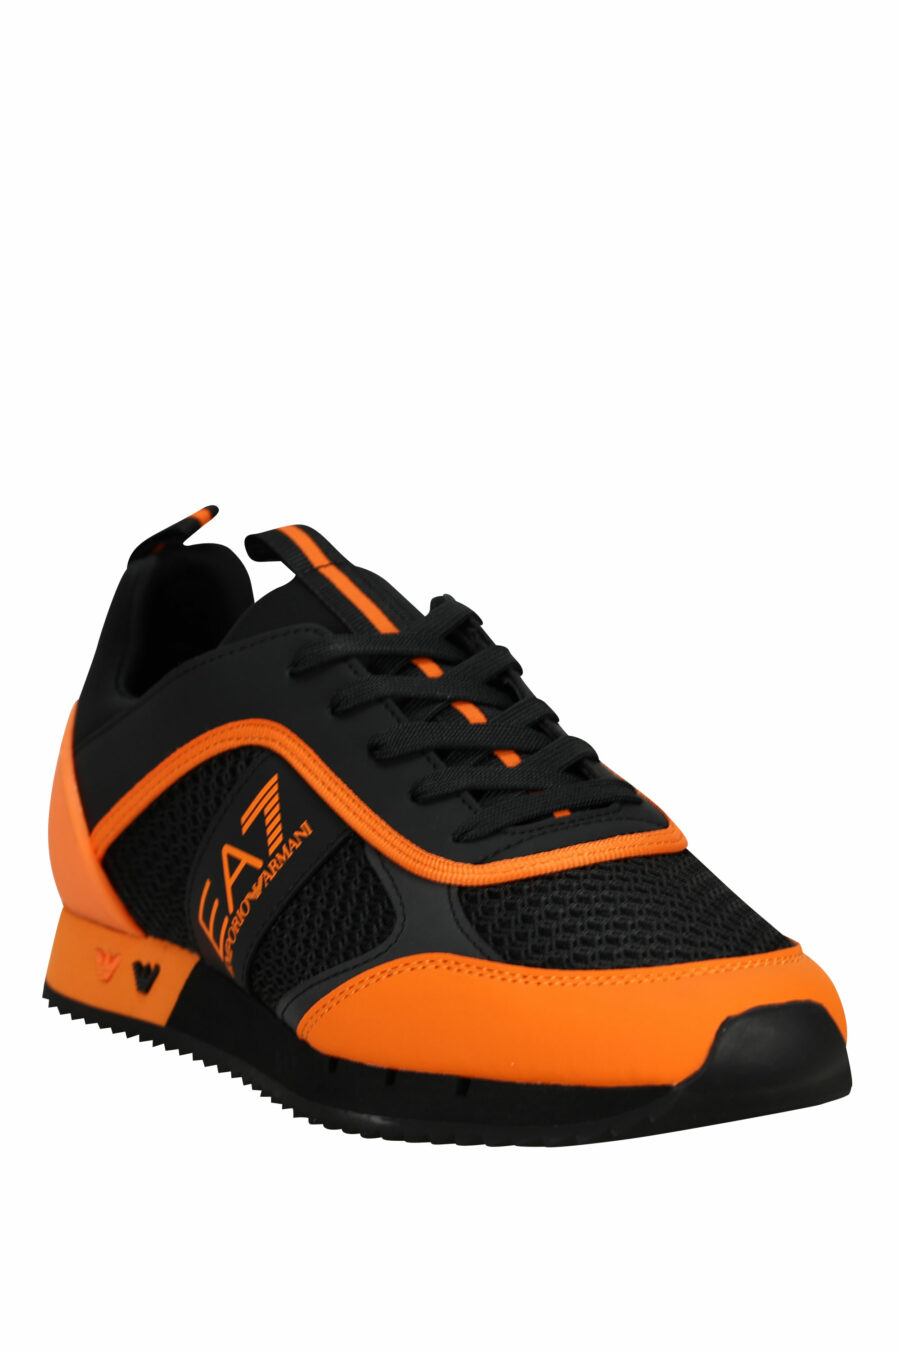 Baskets noires avec logo "lux identity" orange - 8057970798149 1